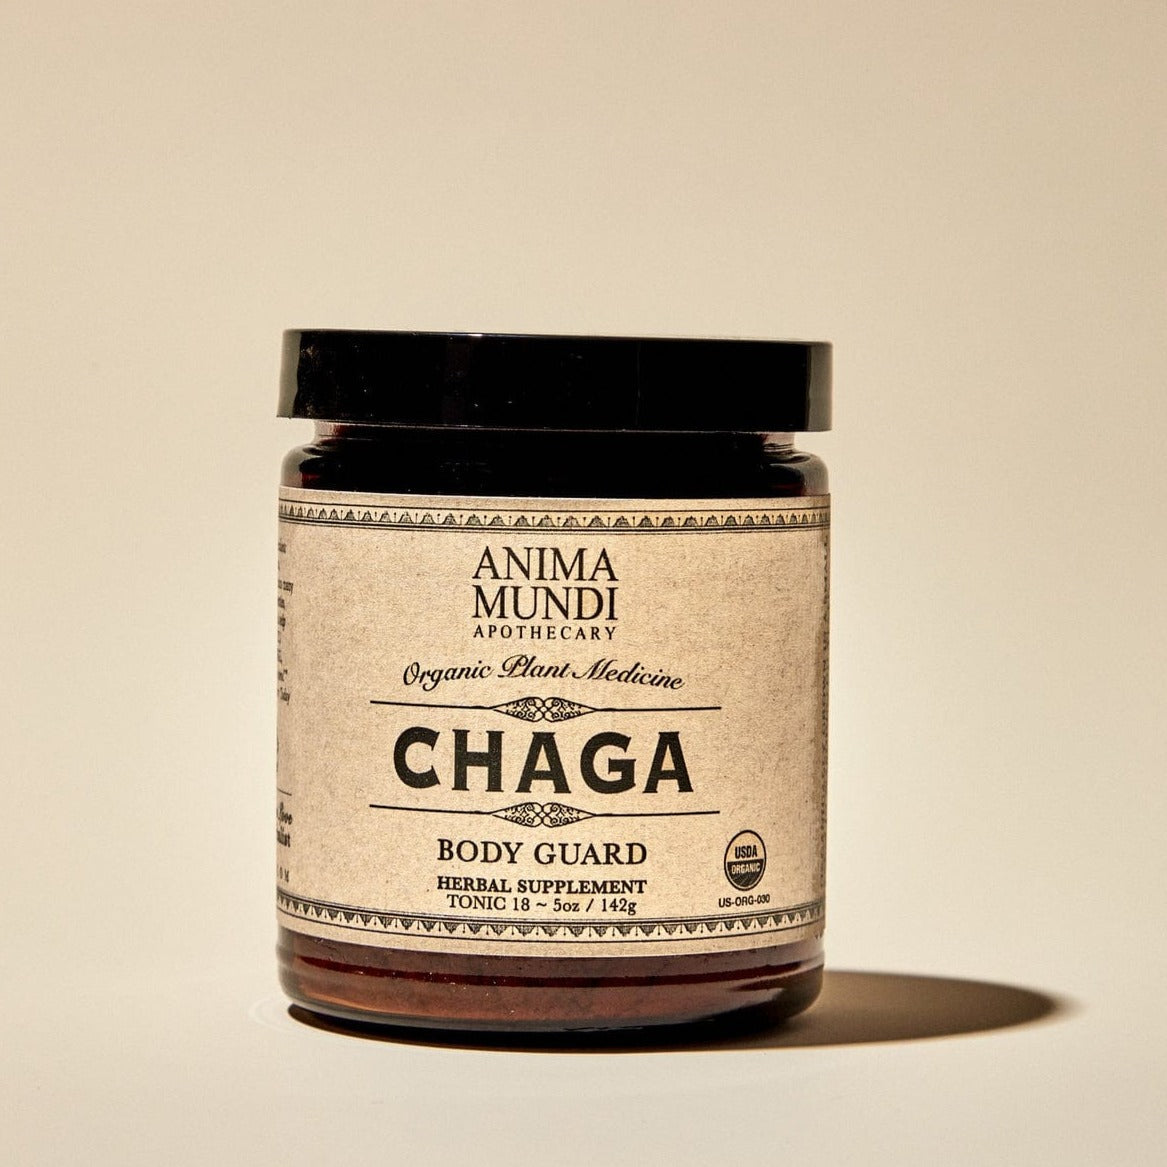 Anima Mundi Apothecary Chaga | body guard